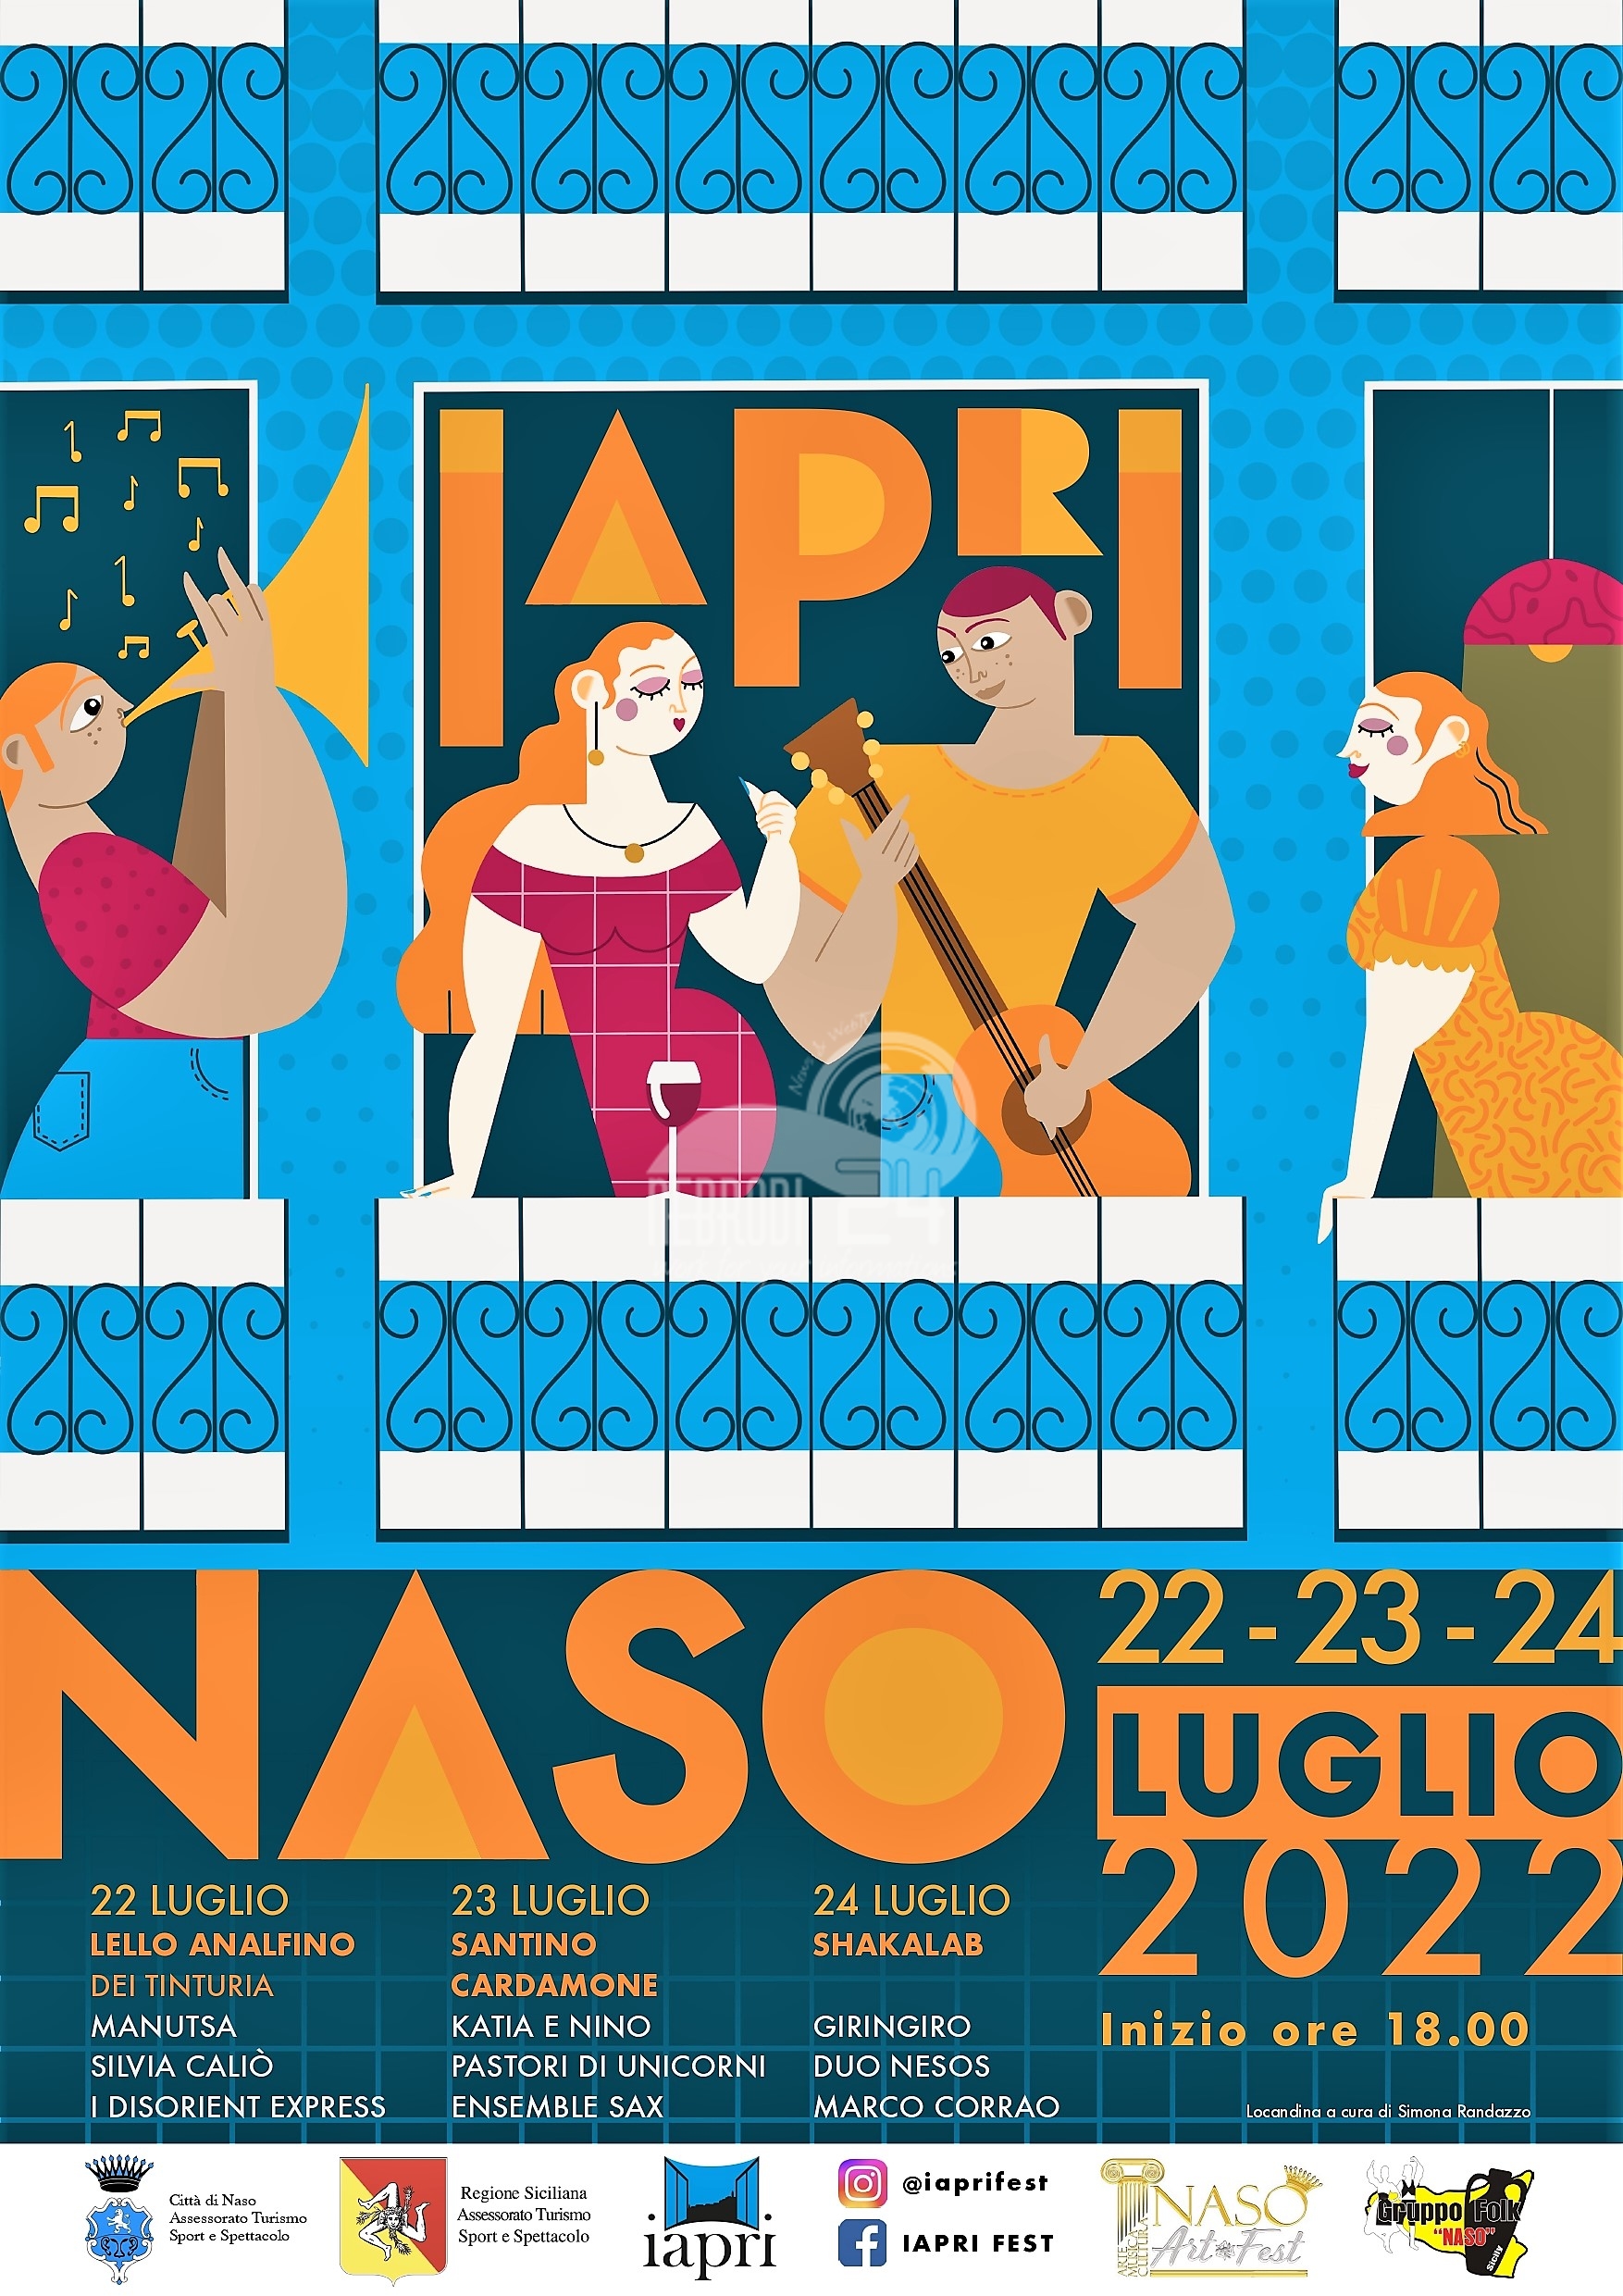 Naso – Dai balconi del centro storico nasce IAPRI Fest, tre giorni tra storia, cultura e musica